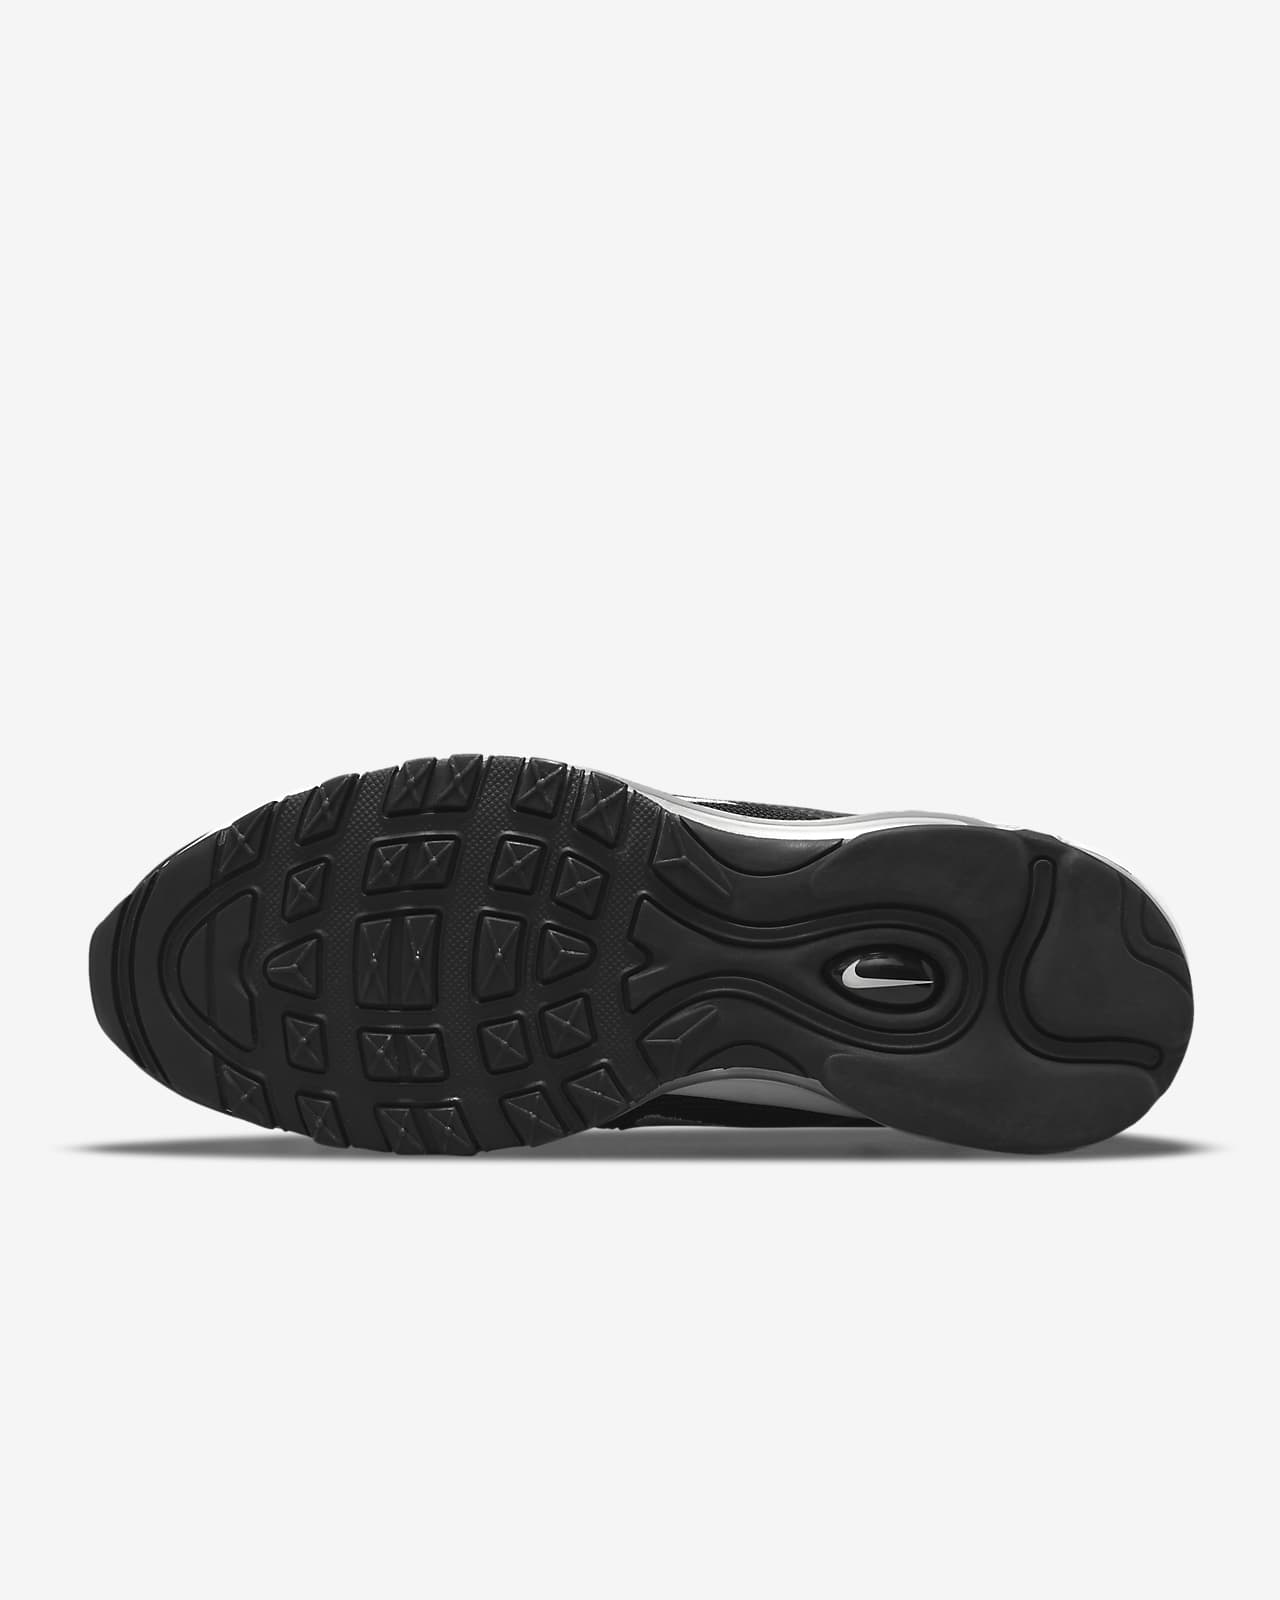 Audaz Rechazar matiz Calzado Nike Air Max 97 para mujer. Nike.com